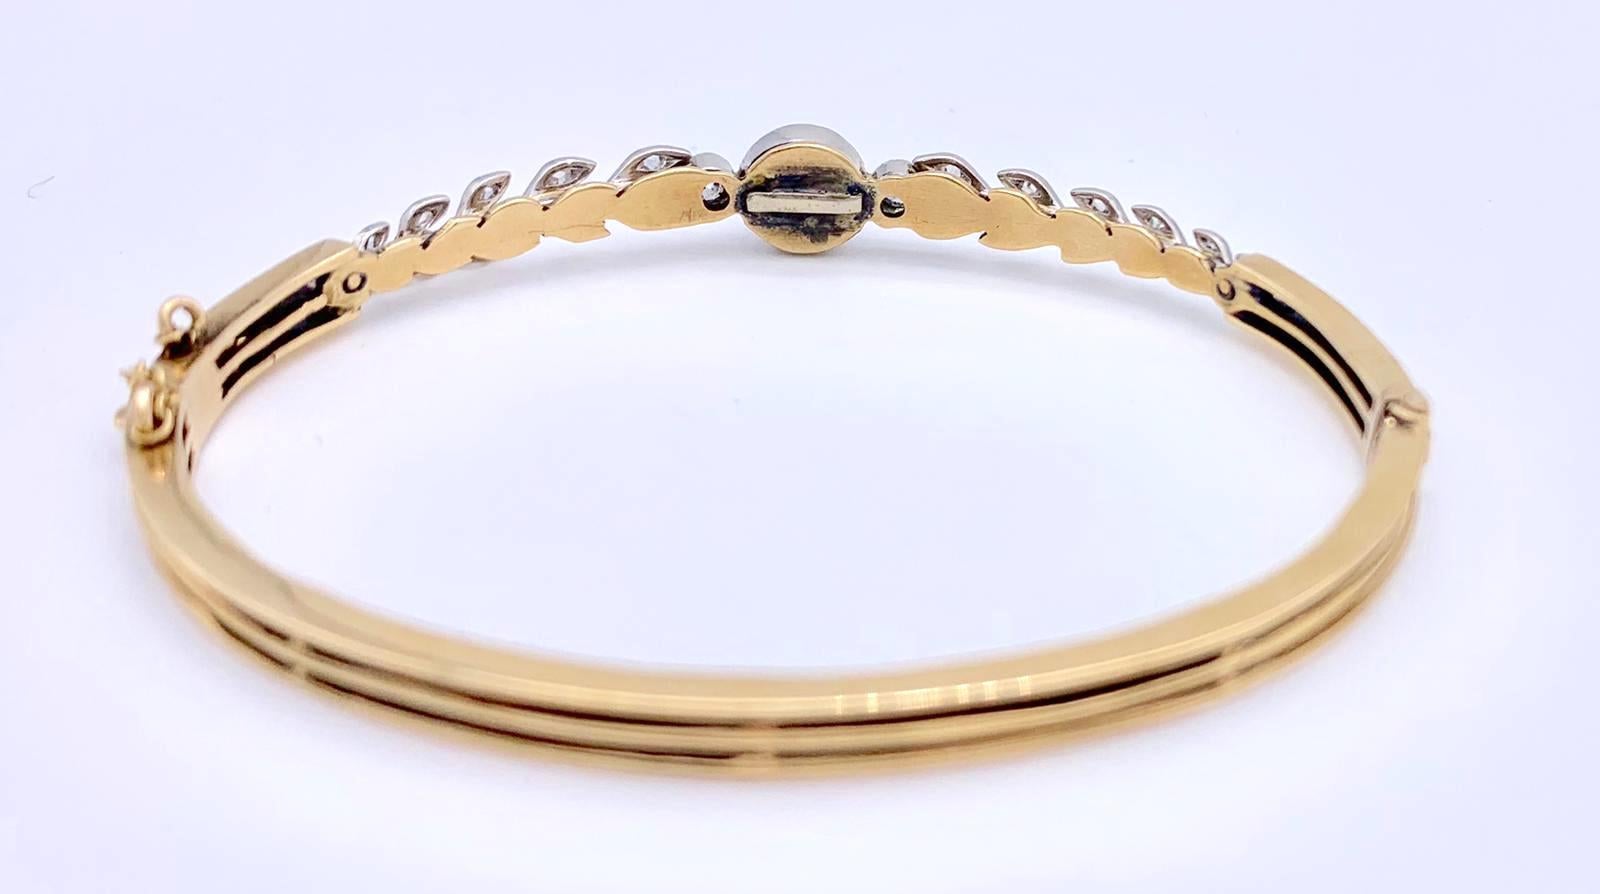 Ein wunderschöner lilafarbener Sternsaphir-Cabochon ist in einen Armreif aus 14-karätigem Gold gefasst. Sie ist mit platingefassten Diamanten verziert. Zu beiden Seiten des Saphirs befinden sich runde Diamanten sowie sechs diamantbesetzte